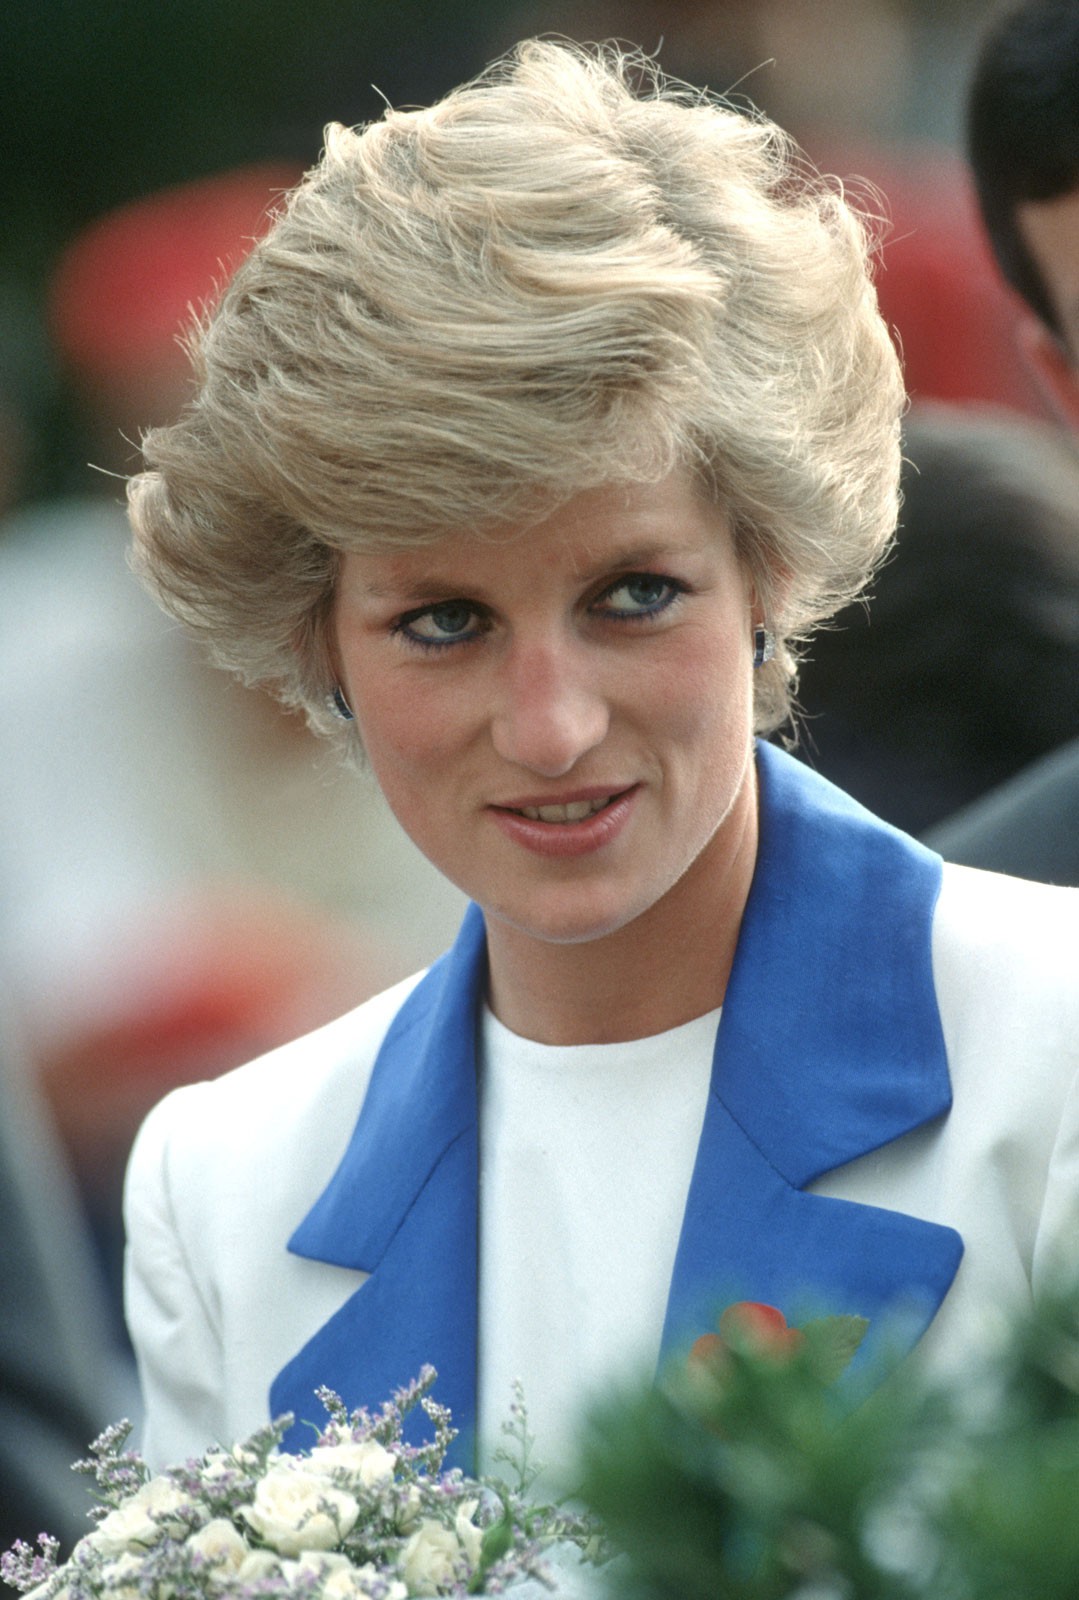 Bí mật đằng sau mái tóc ngắn hoàn hảo của Công nương Diana sẽ khiến bạn càng ngưỡng mộ sự kín đáo của bà - Ảnh 1.